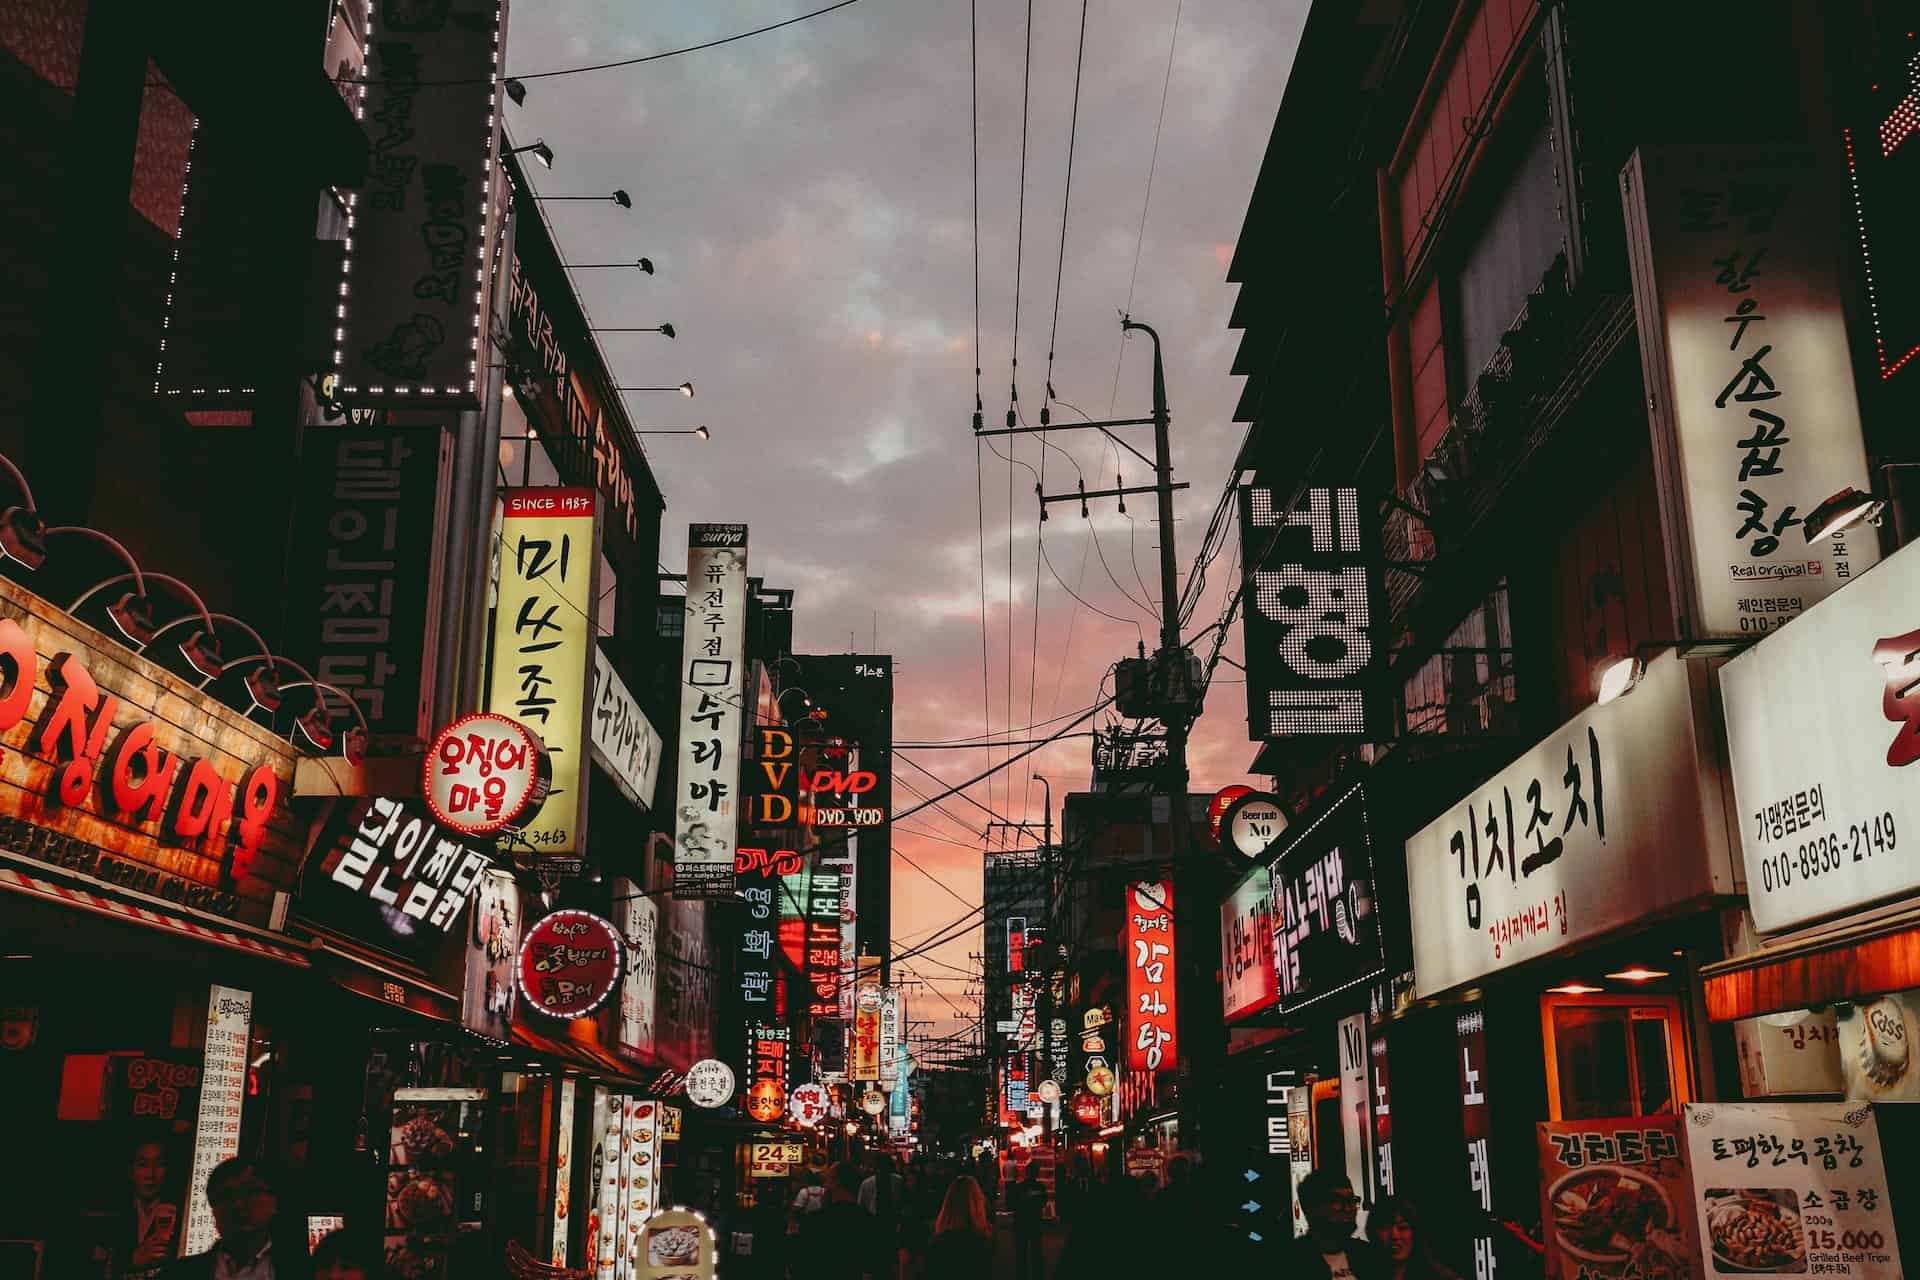 Korean market at night